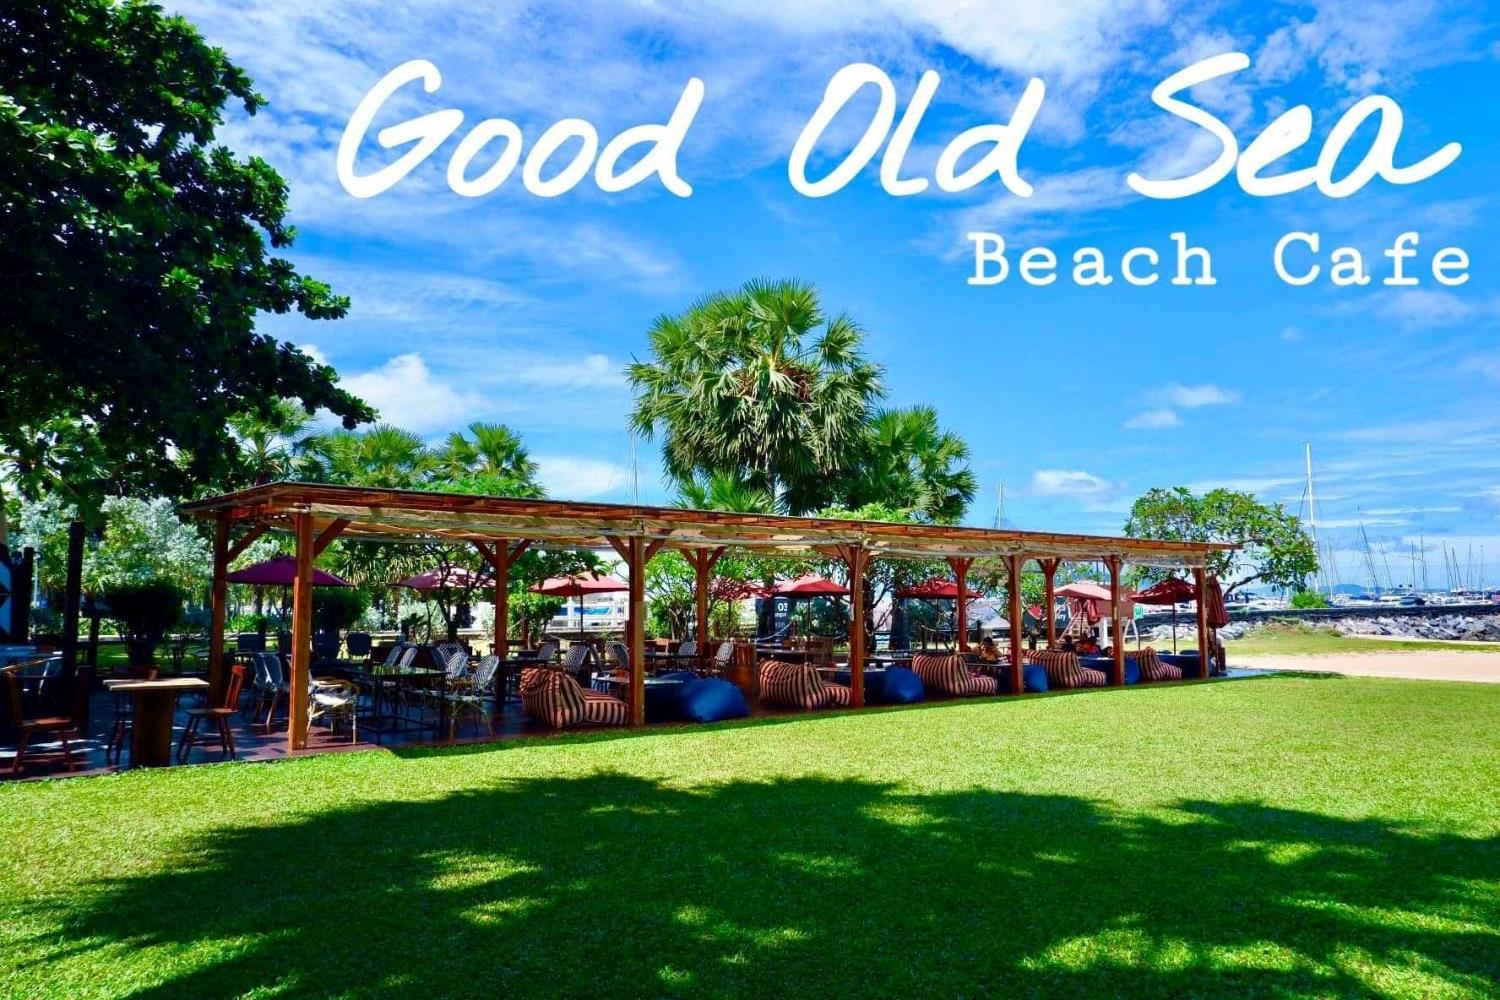 Good Old Sea Beach Cafe